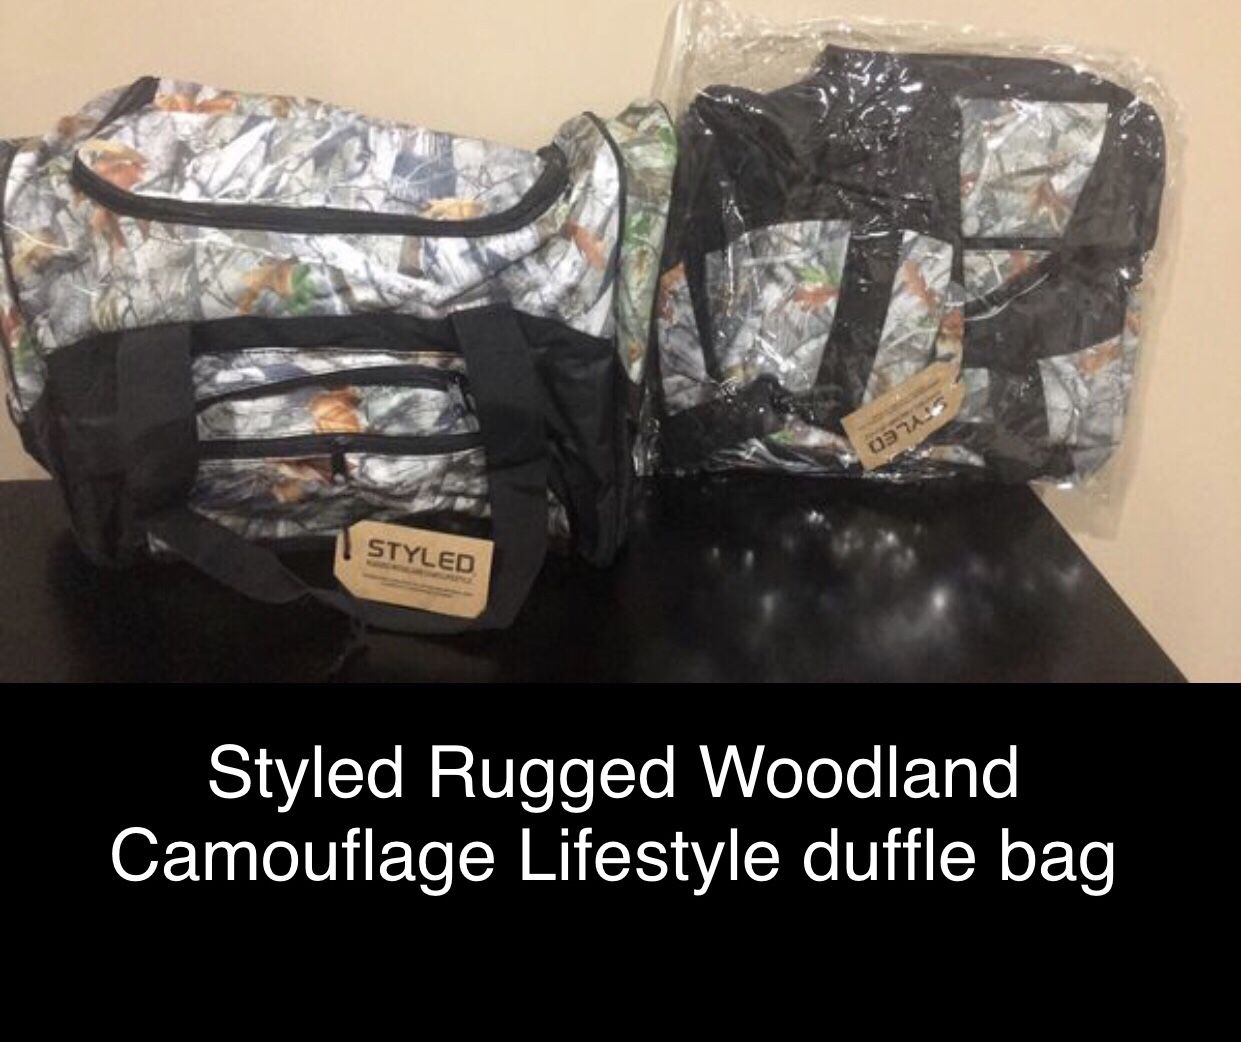 2- Camo Duffle Bag(s)